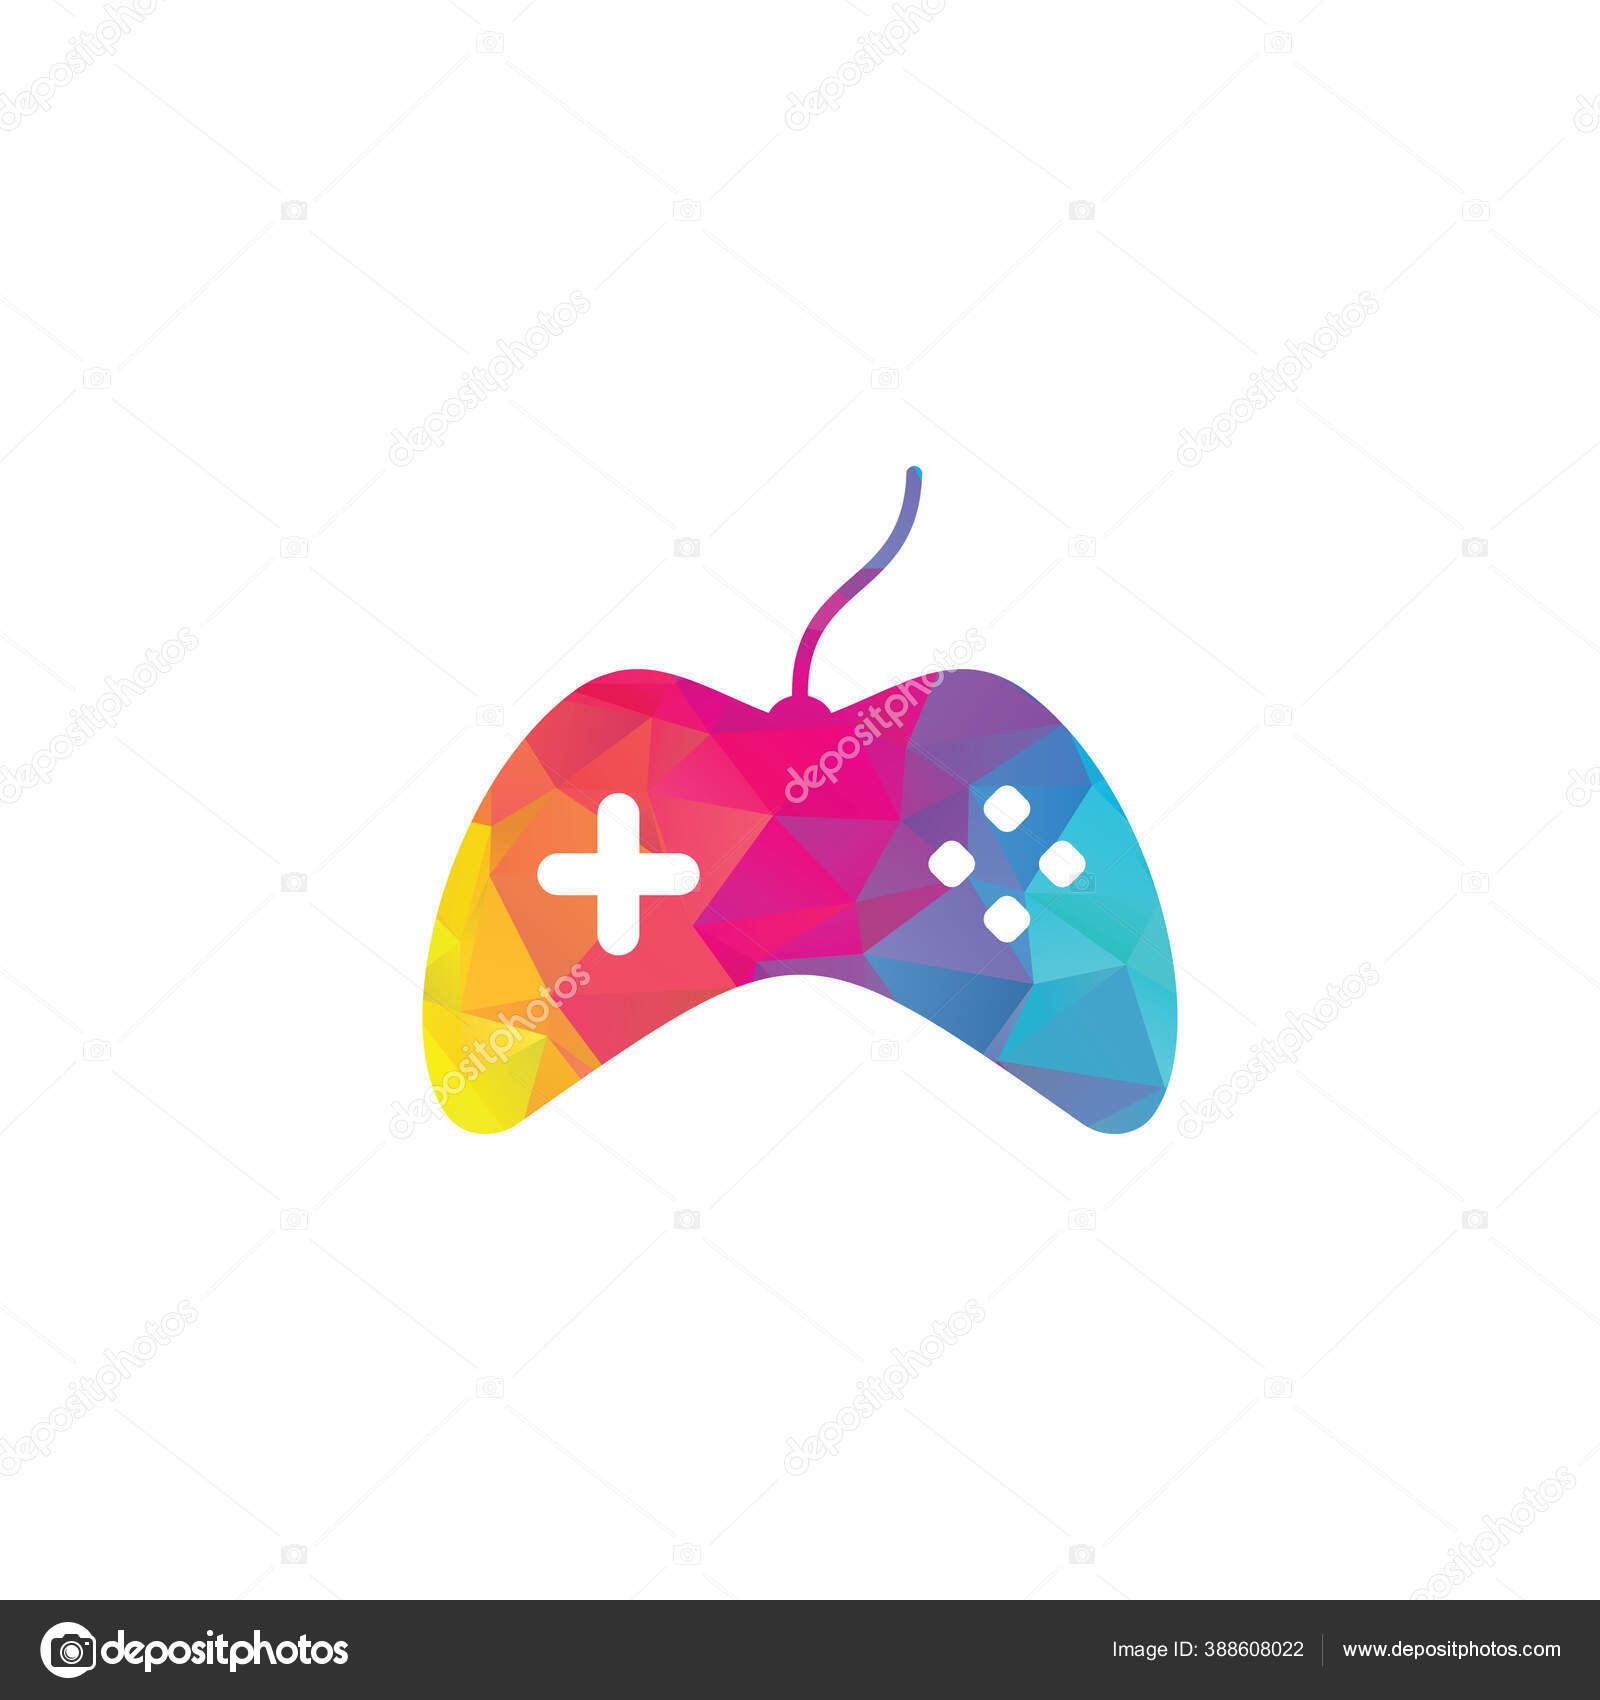 Logotipo de vetor de ícone de stick de jogo grátis simples e legal